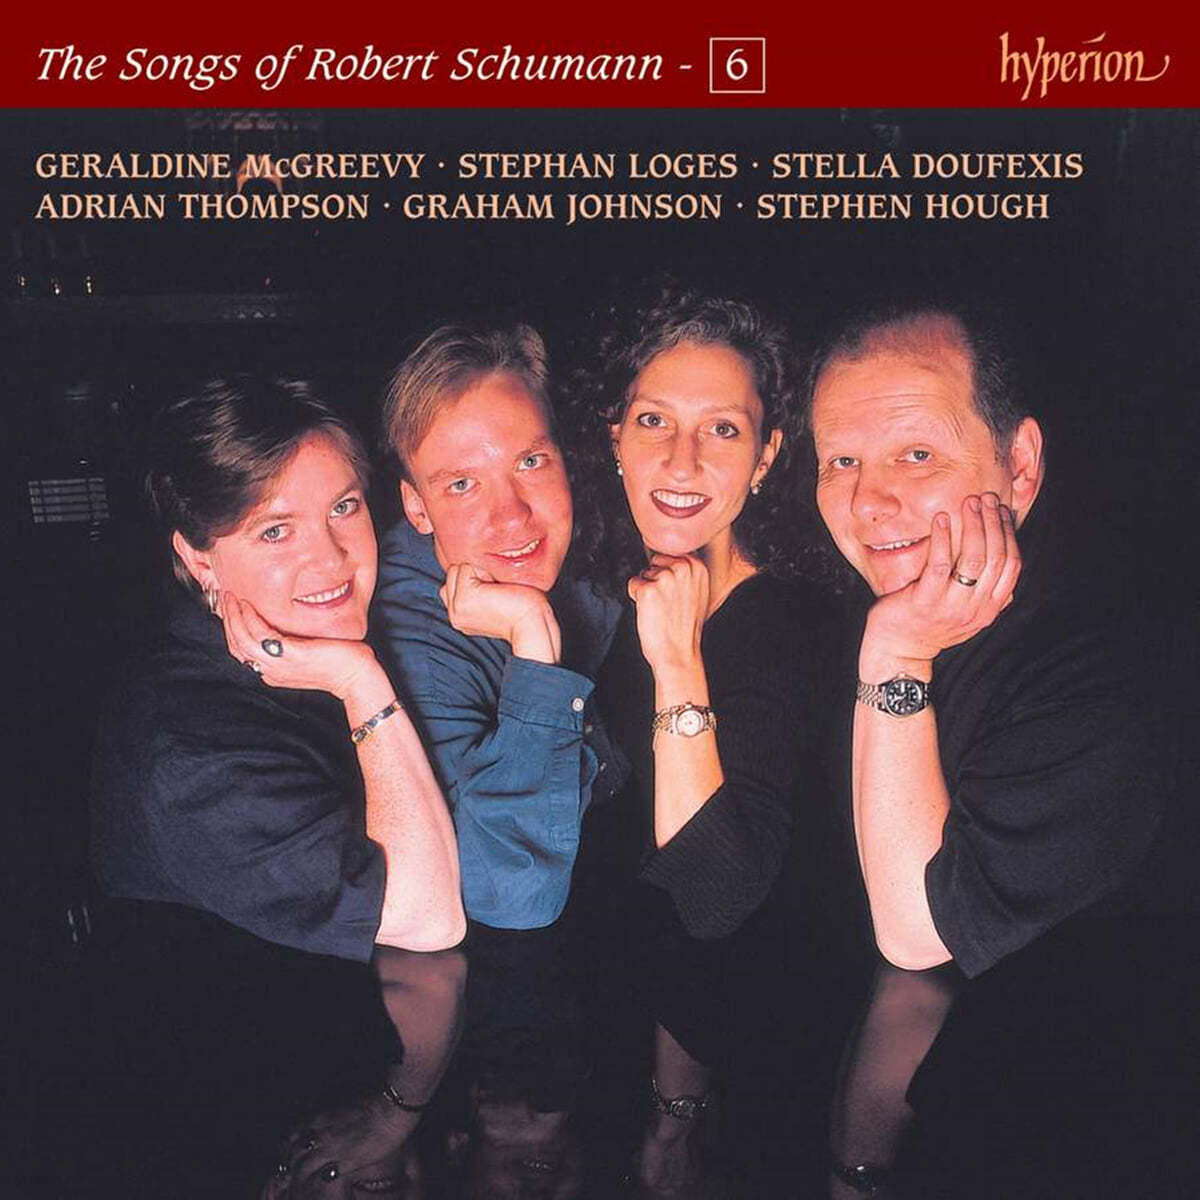 슈만: 가곡 6권 (The Songs of Robert Schumann - Vol. 6)